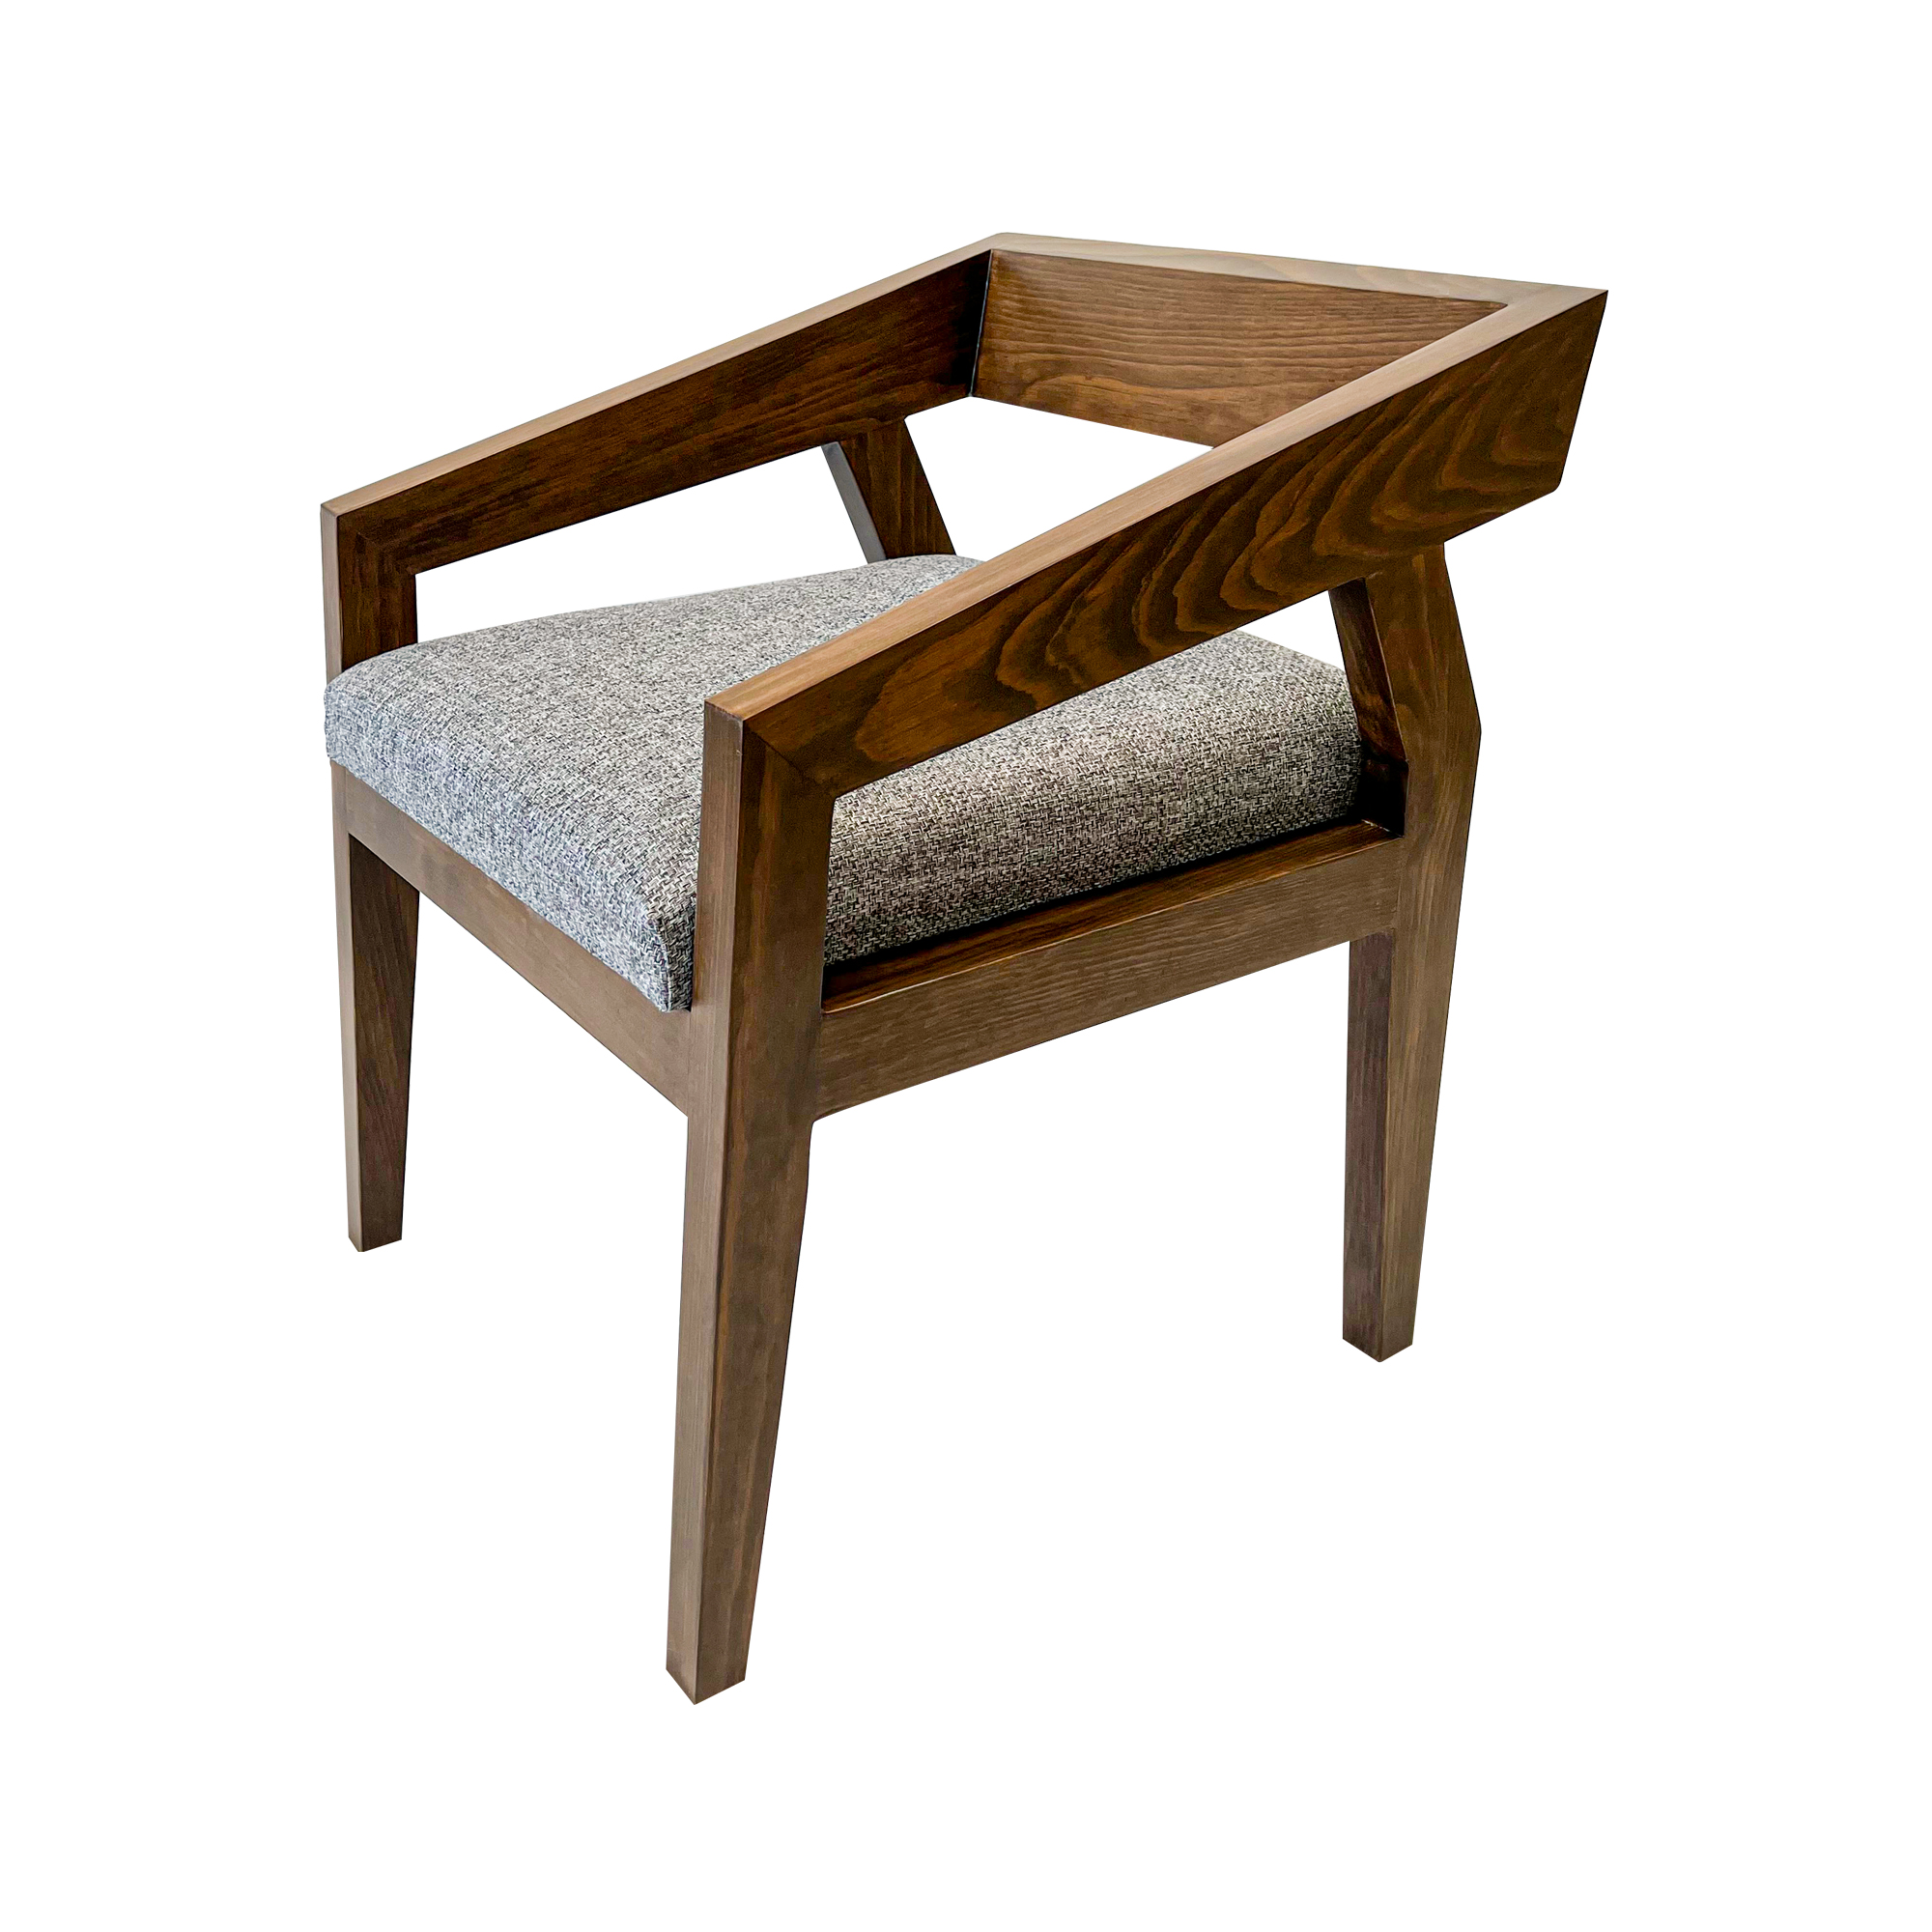 Silla Modelo Arista - Mobydec Muebles  Venta de muebles en línea salas,  sillones, mesas